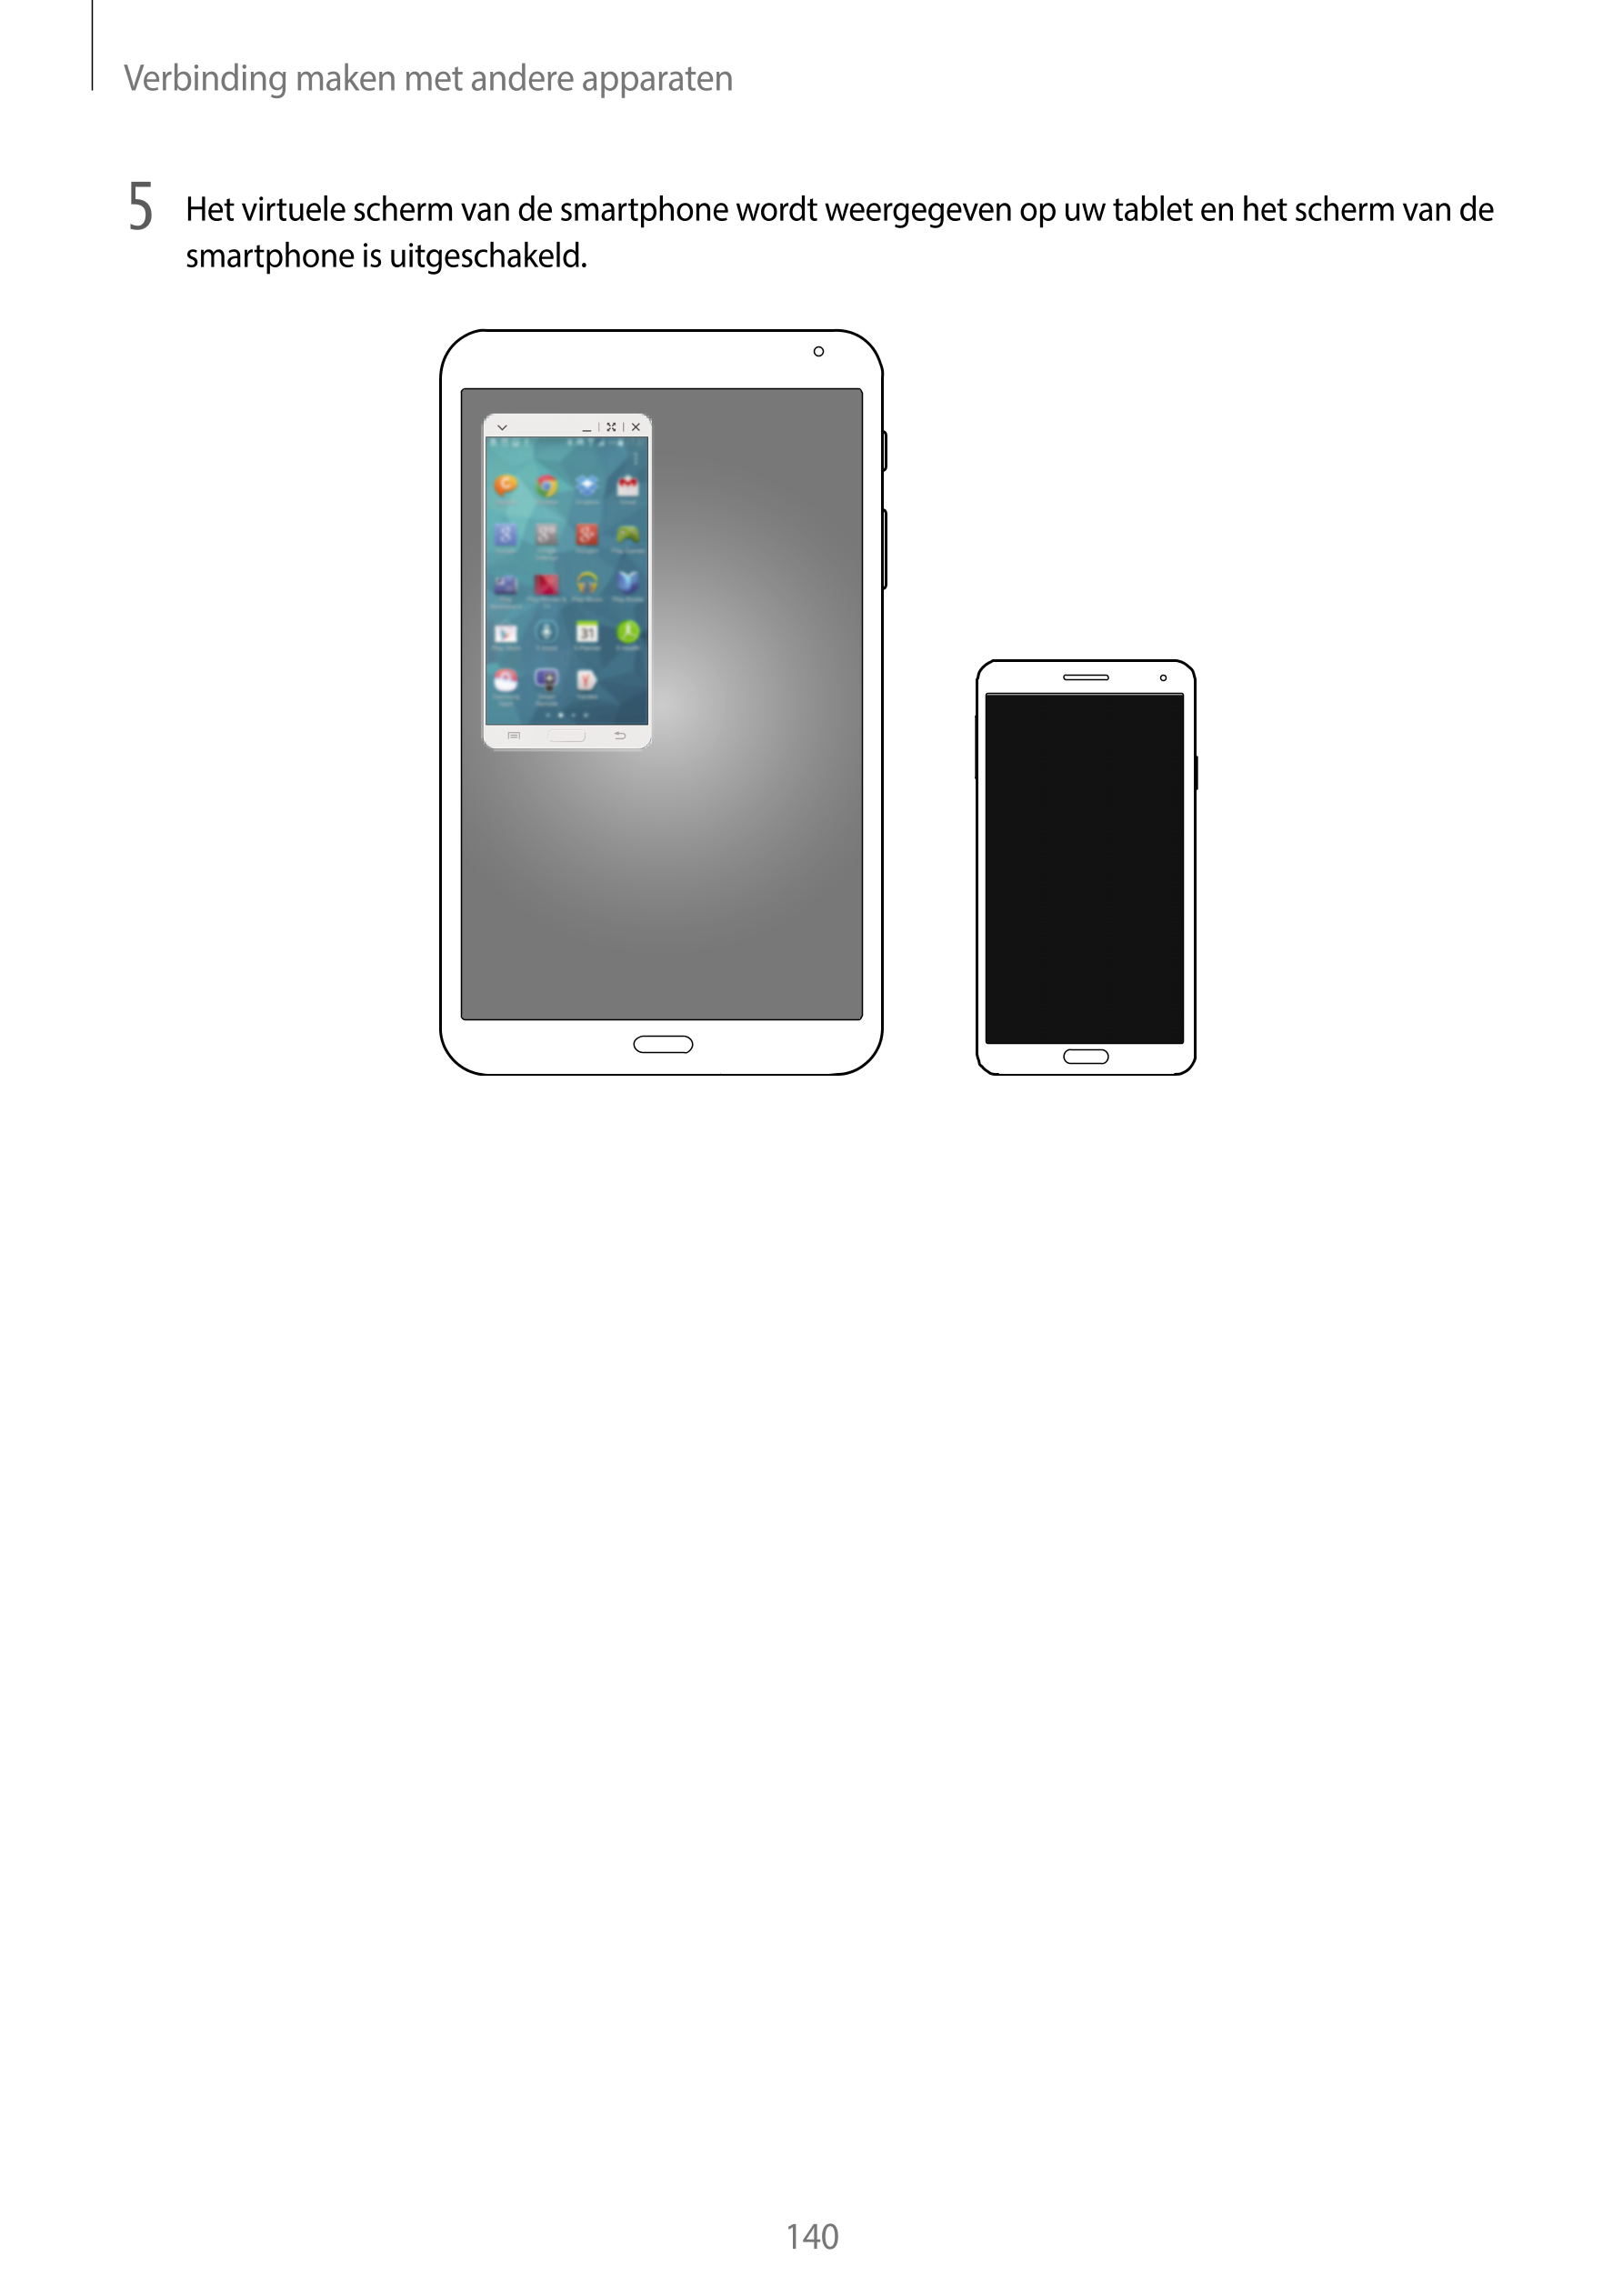 Verbinding maken met andere apparaten
5  Het virtuele scherm van de smartphone wordt weergegeven op uw tablet en het scherm van 